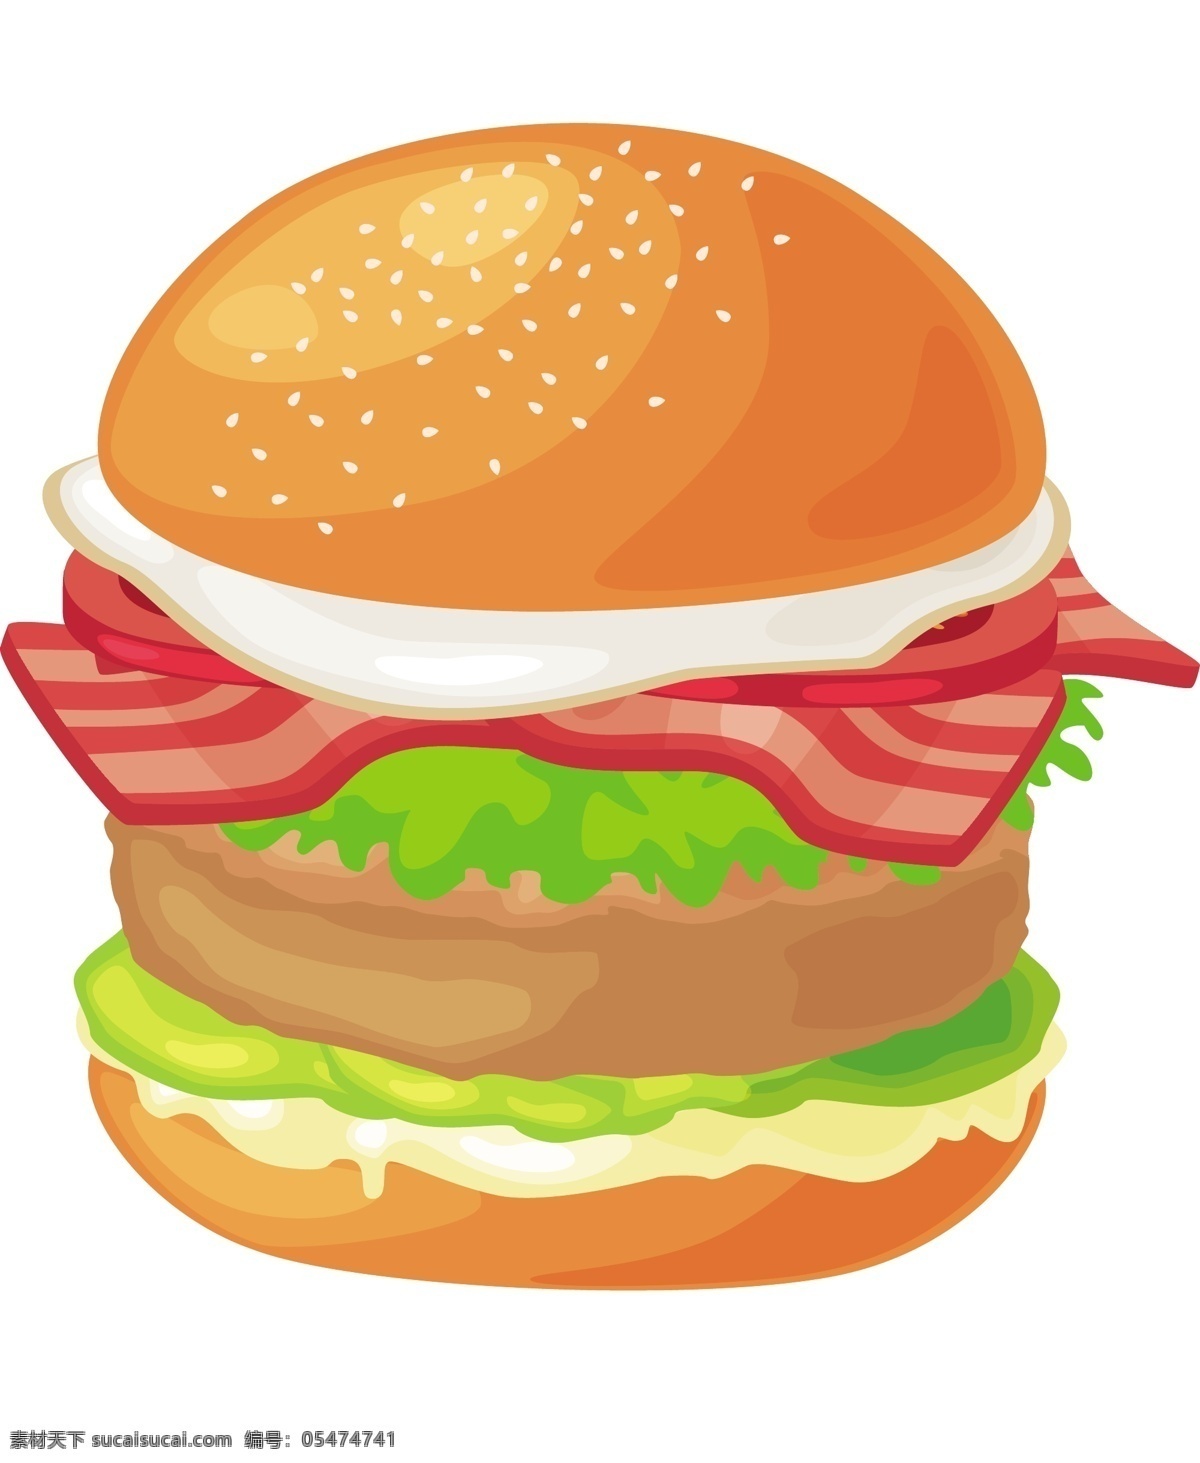 卡通 美食 汉堡 商用 元素 美食节 食物 餐厅 装饰 面板 火腿肠 生活元素 手绘